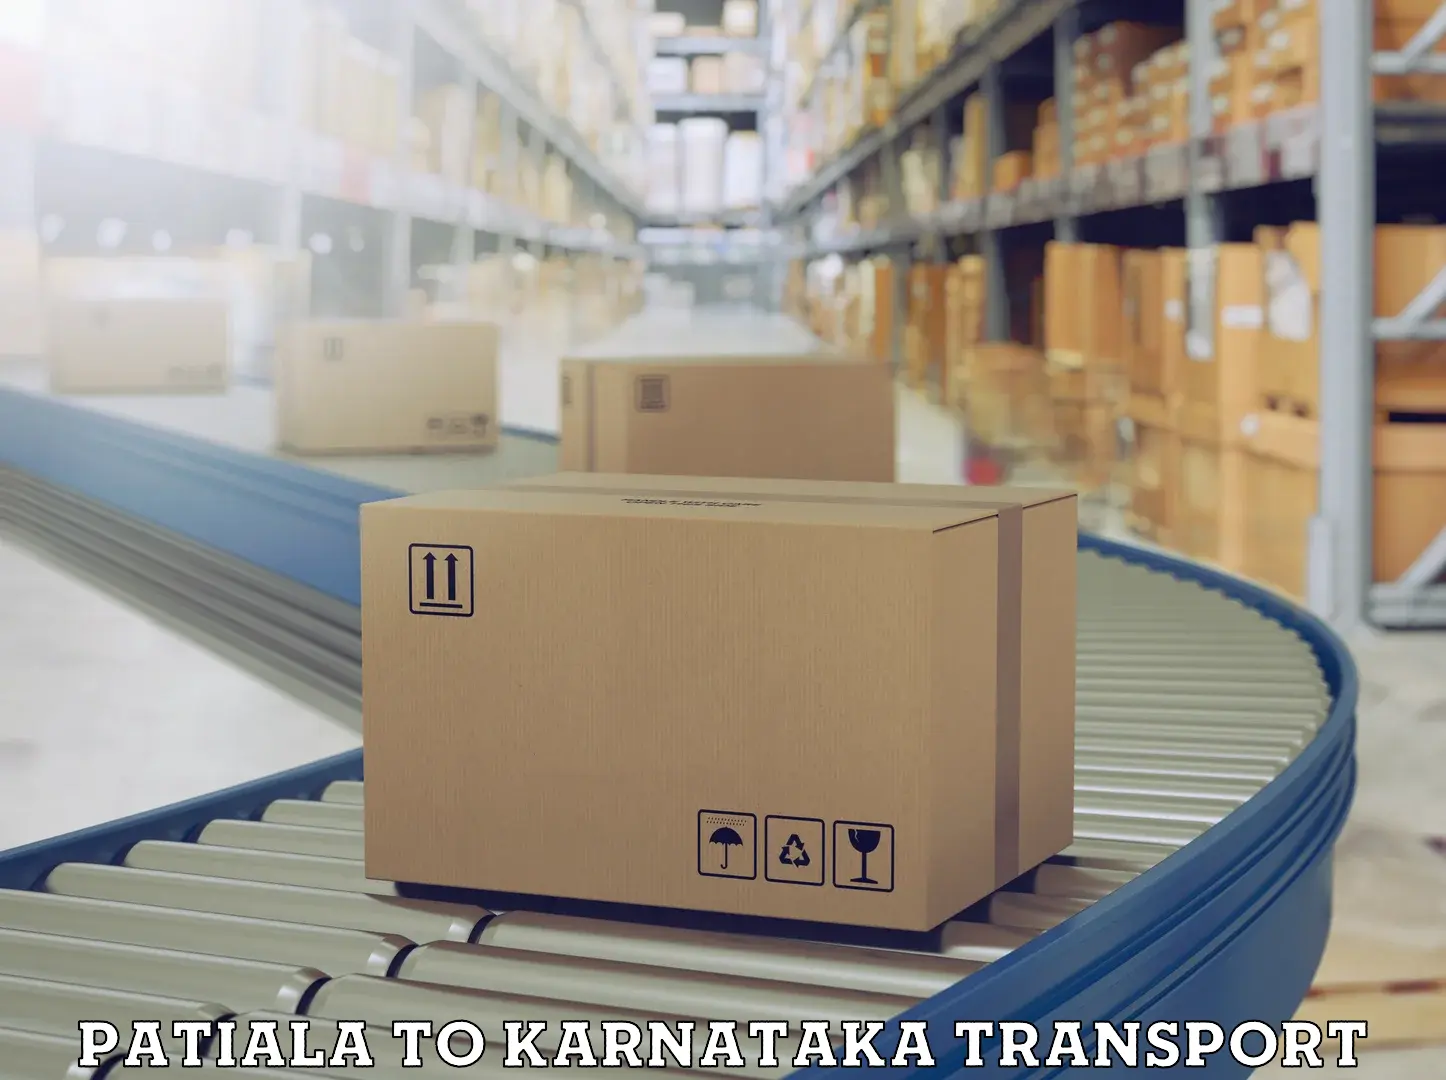 Daily parcel service transport Patiala to Karkala